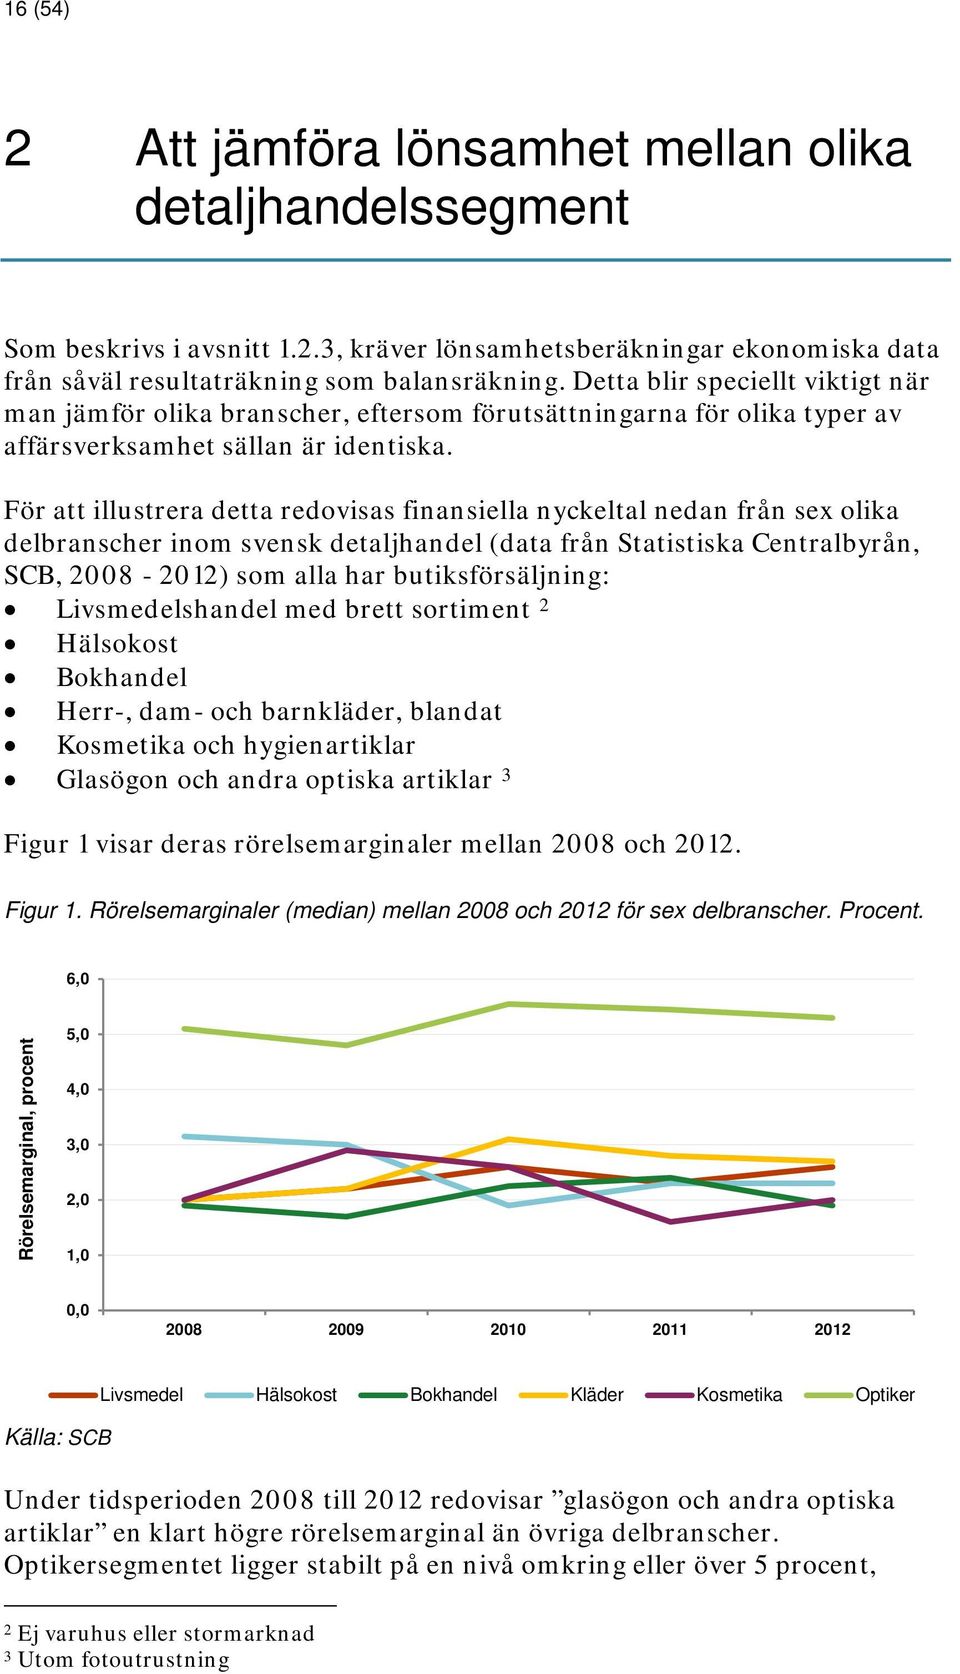 För att illustrera detta redovisas finansiella nyckeltal nedan från sex olika delbranscher inom svensk detaljhandel (data från Statistiska Centralbyrån, SCB, 2008-2012) som alla har